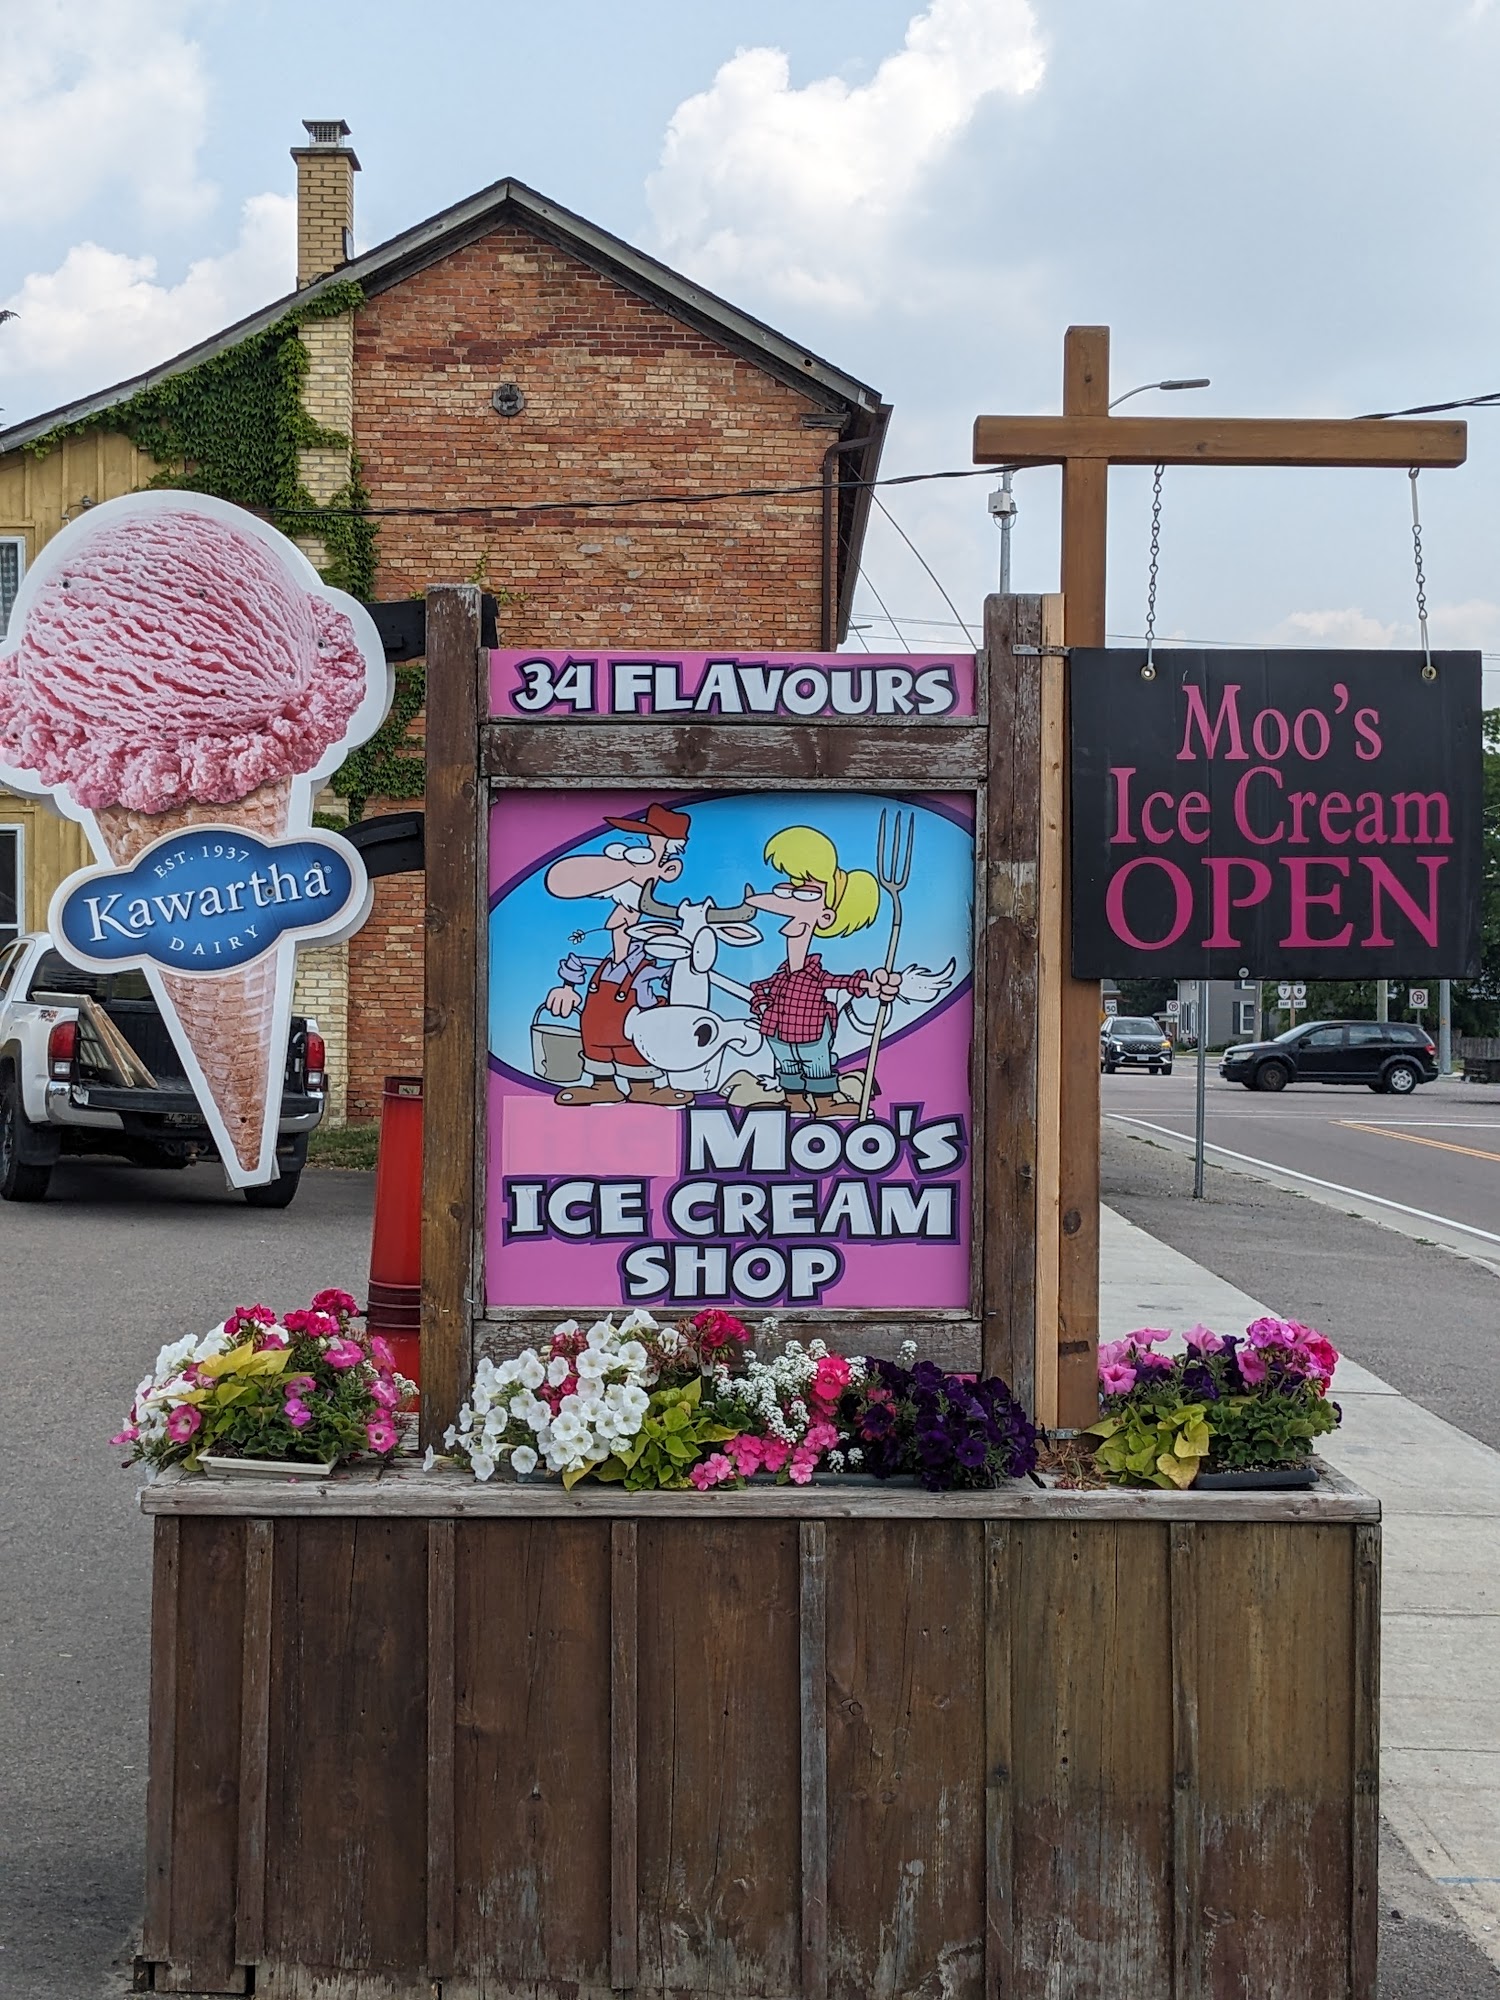 Moo’s Ice Cream Shop